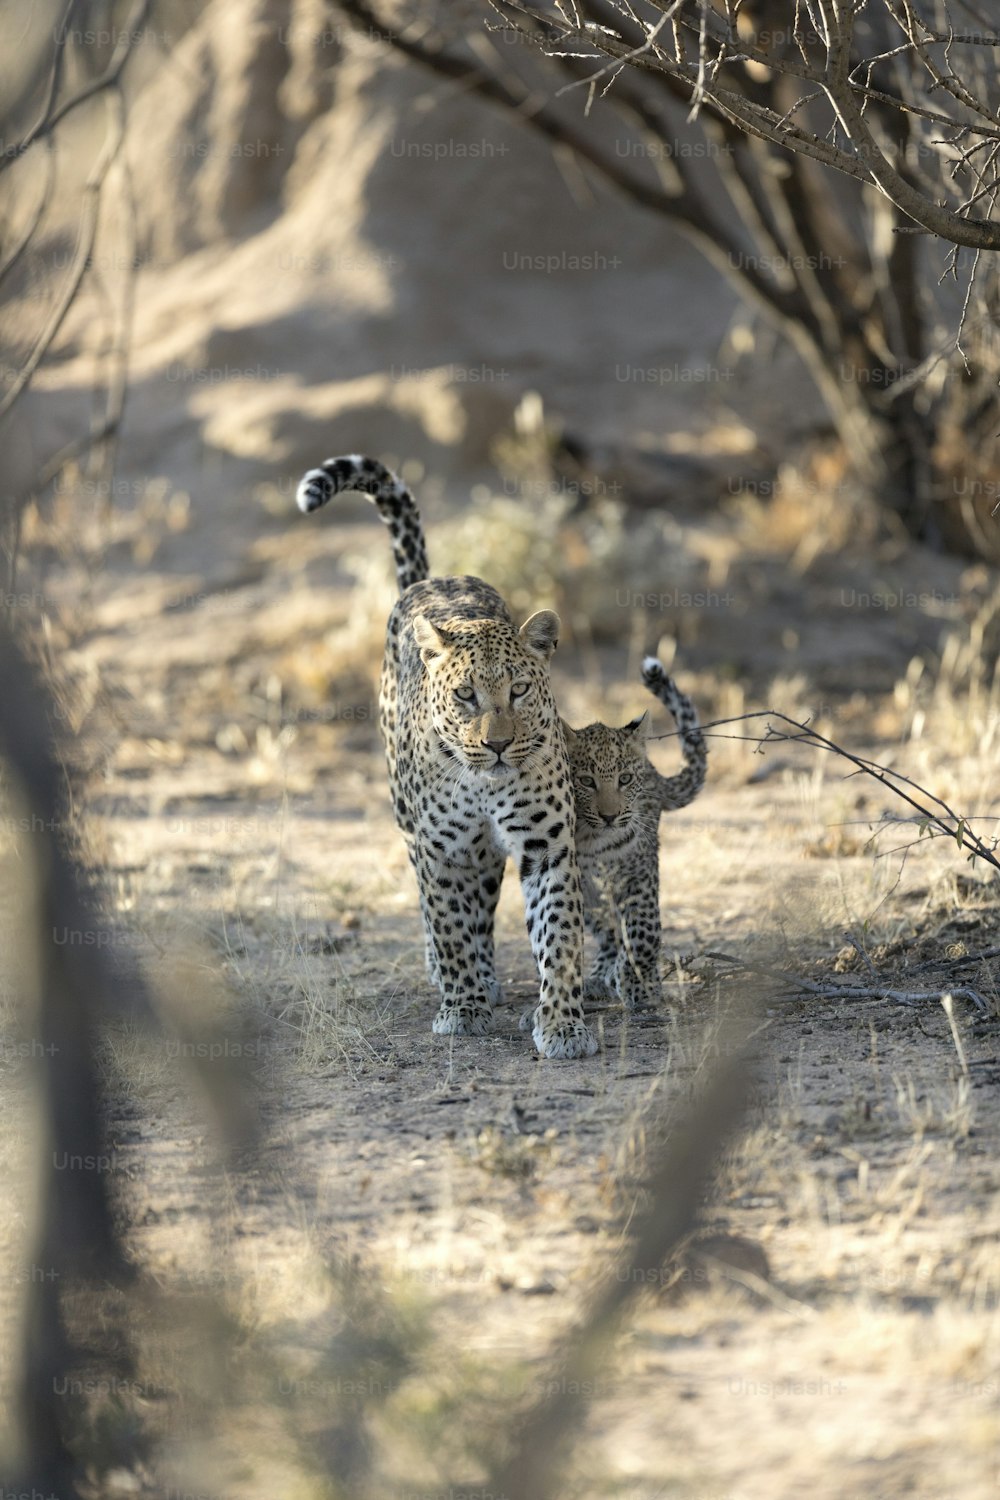 Madre y su cachorro de leopardo caminando en el Parque Nacional de Etosha, Namibia.